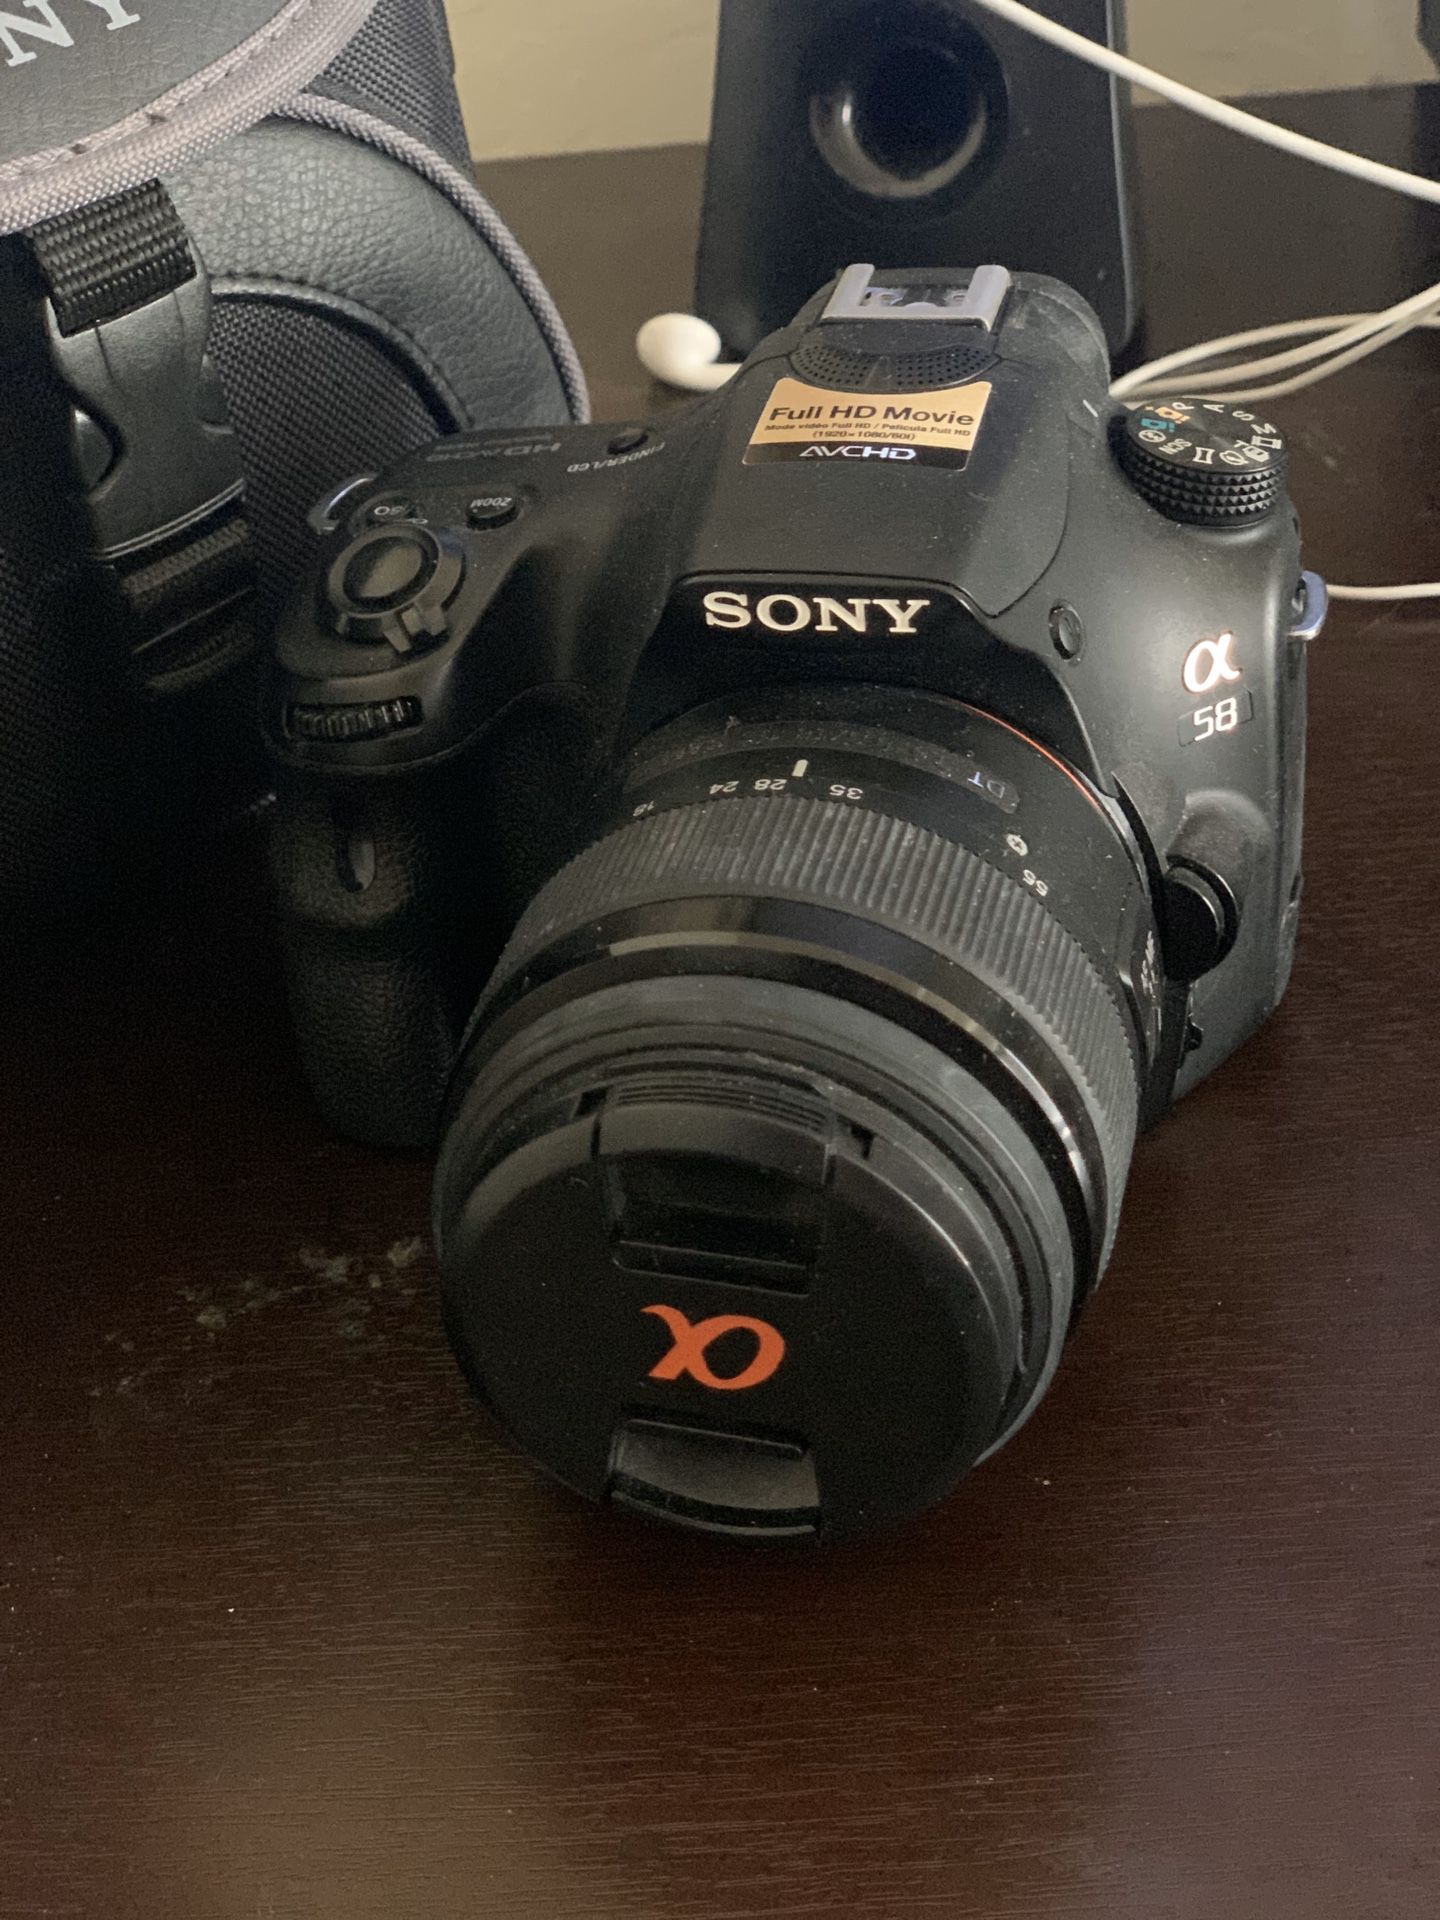 Sony Alpha 58 DSLR camera